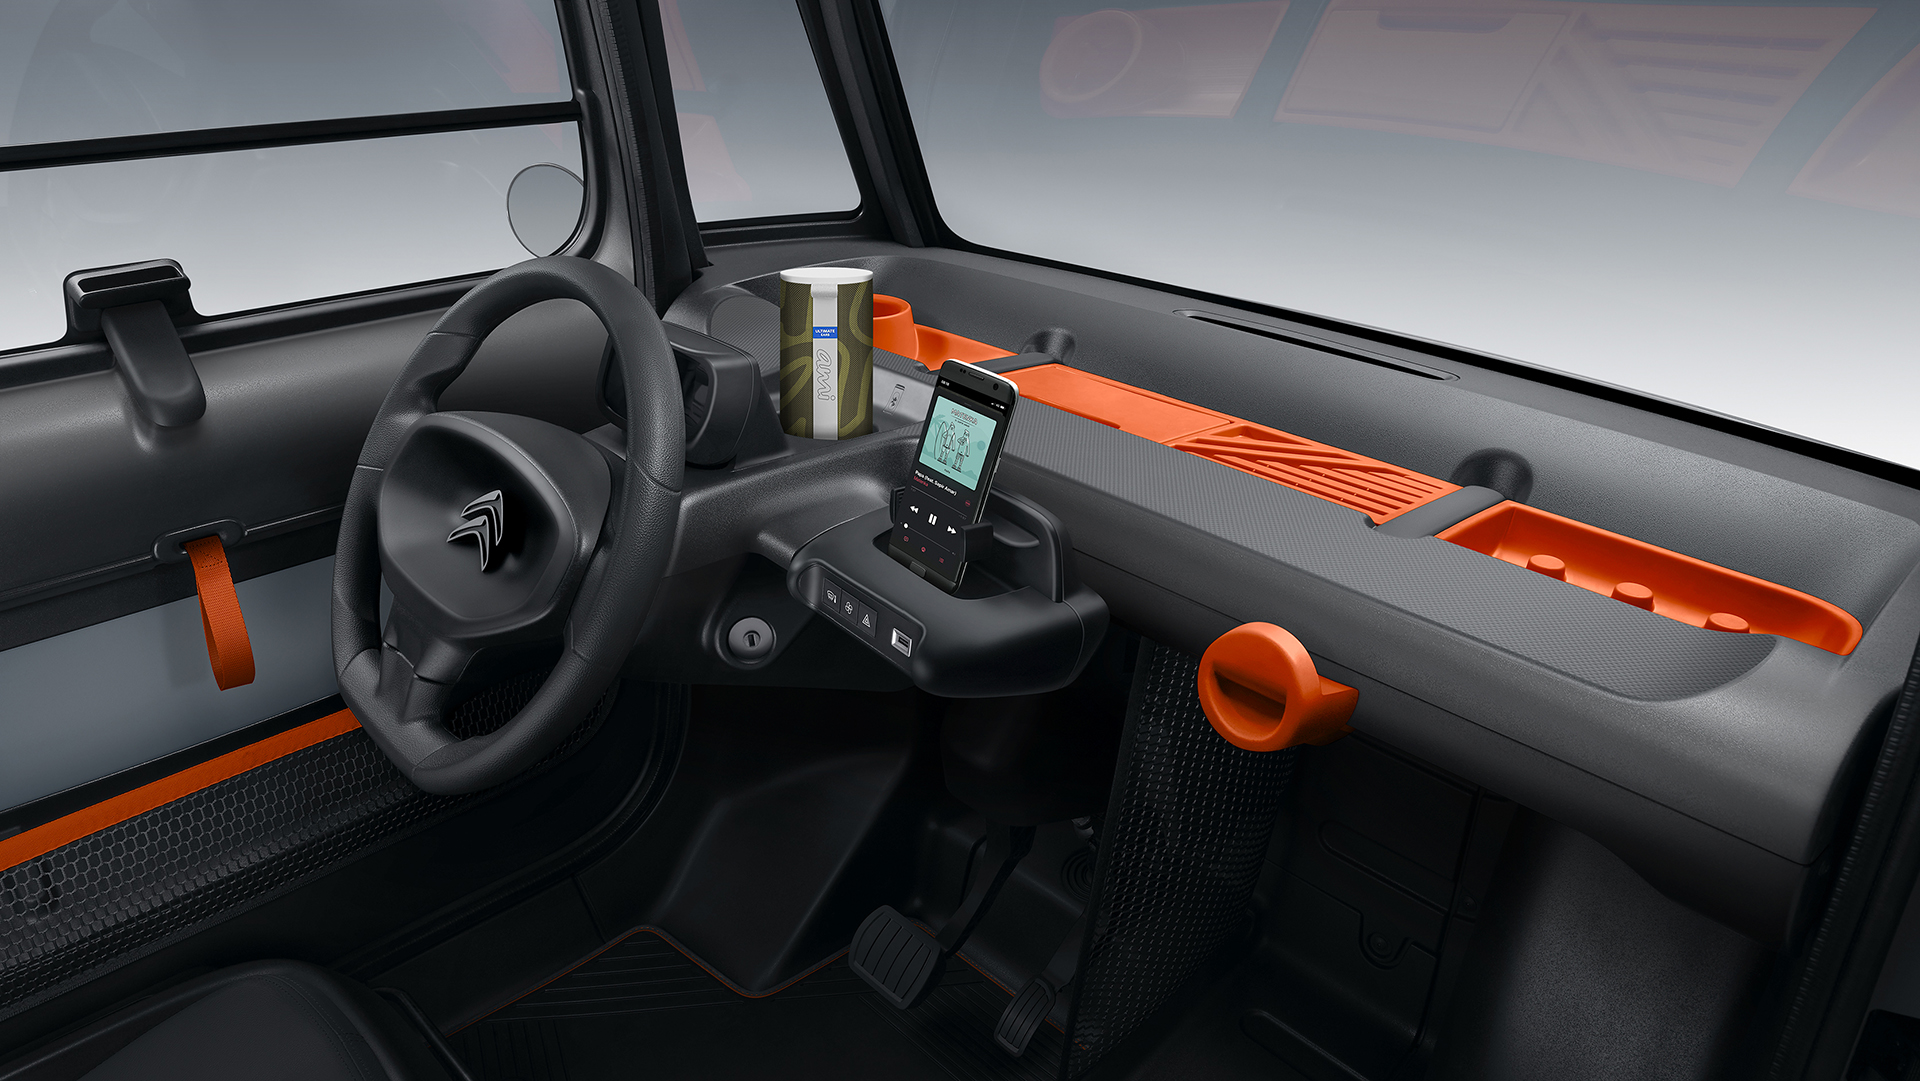 El interior del Citroën Ami es el claro reflejo de un auto eléctrico asequible que no tiene tanto equipamiento propio y utiliza el celular de su conductor en reemplazo